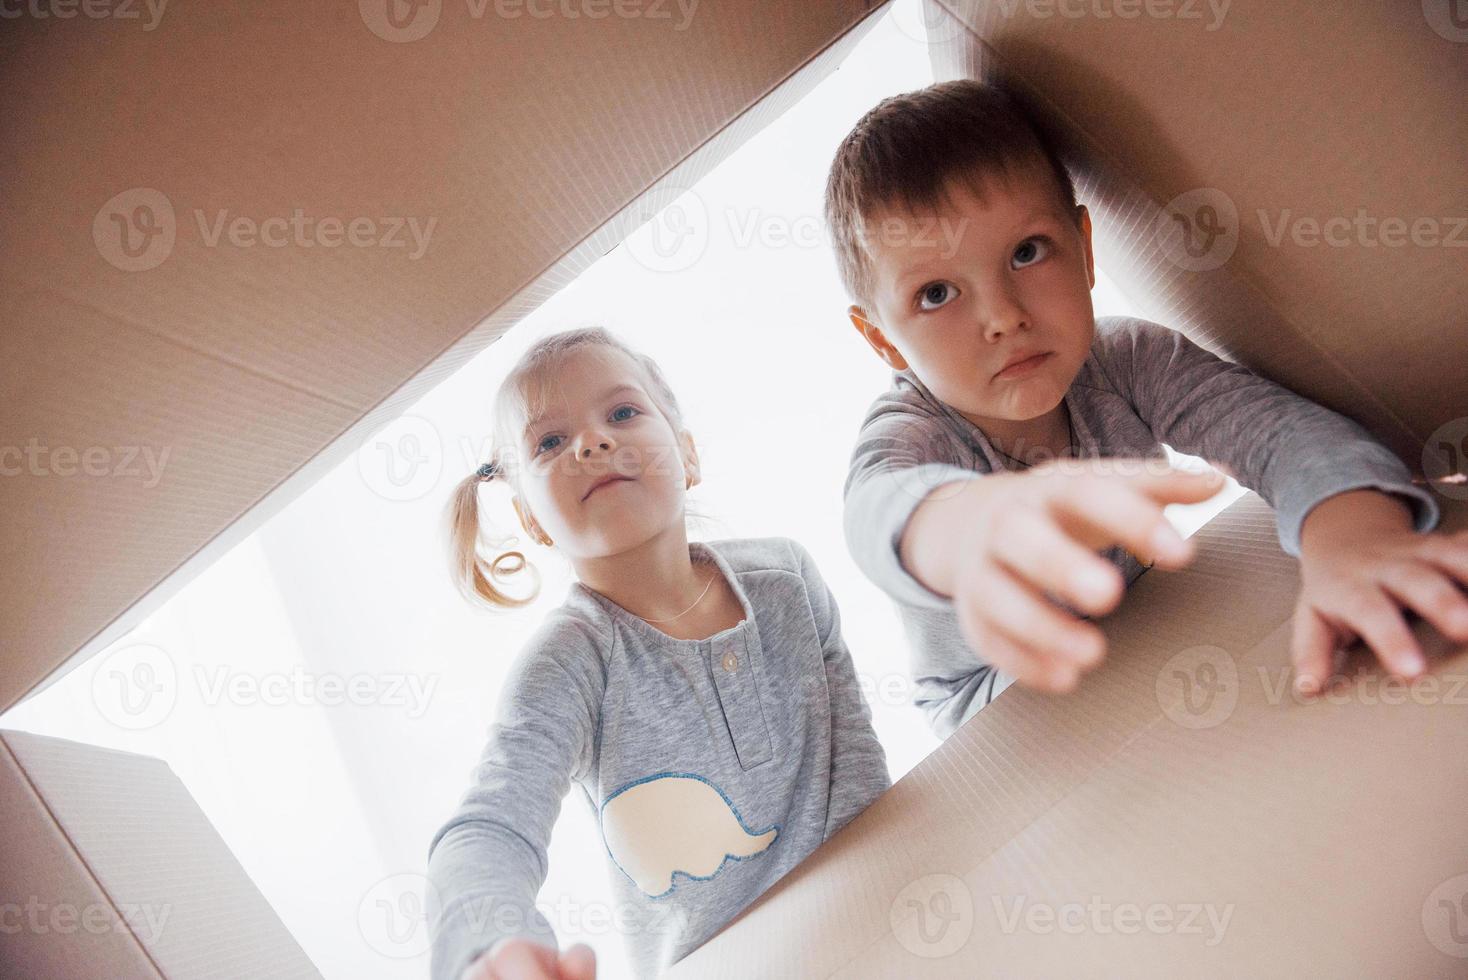 Zwei kleine Kinder, Junge und Mädchen, die den Karton öffnen und überrascht hineinschauen foto